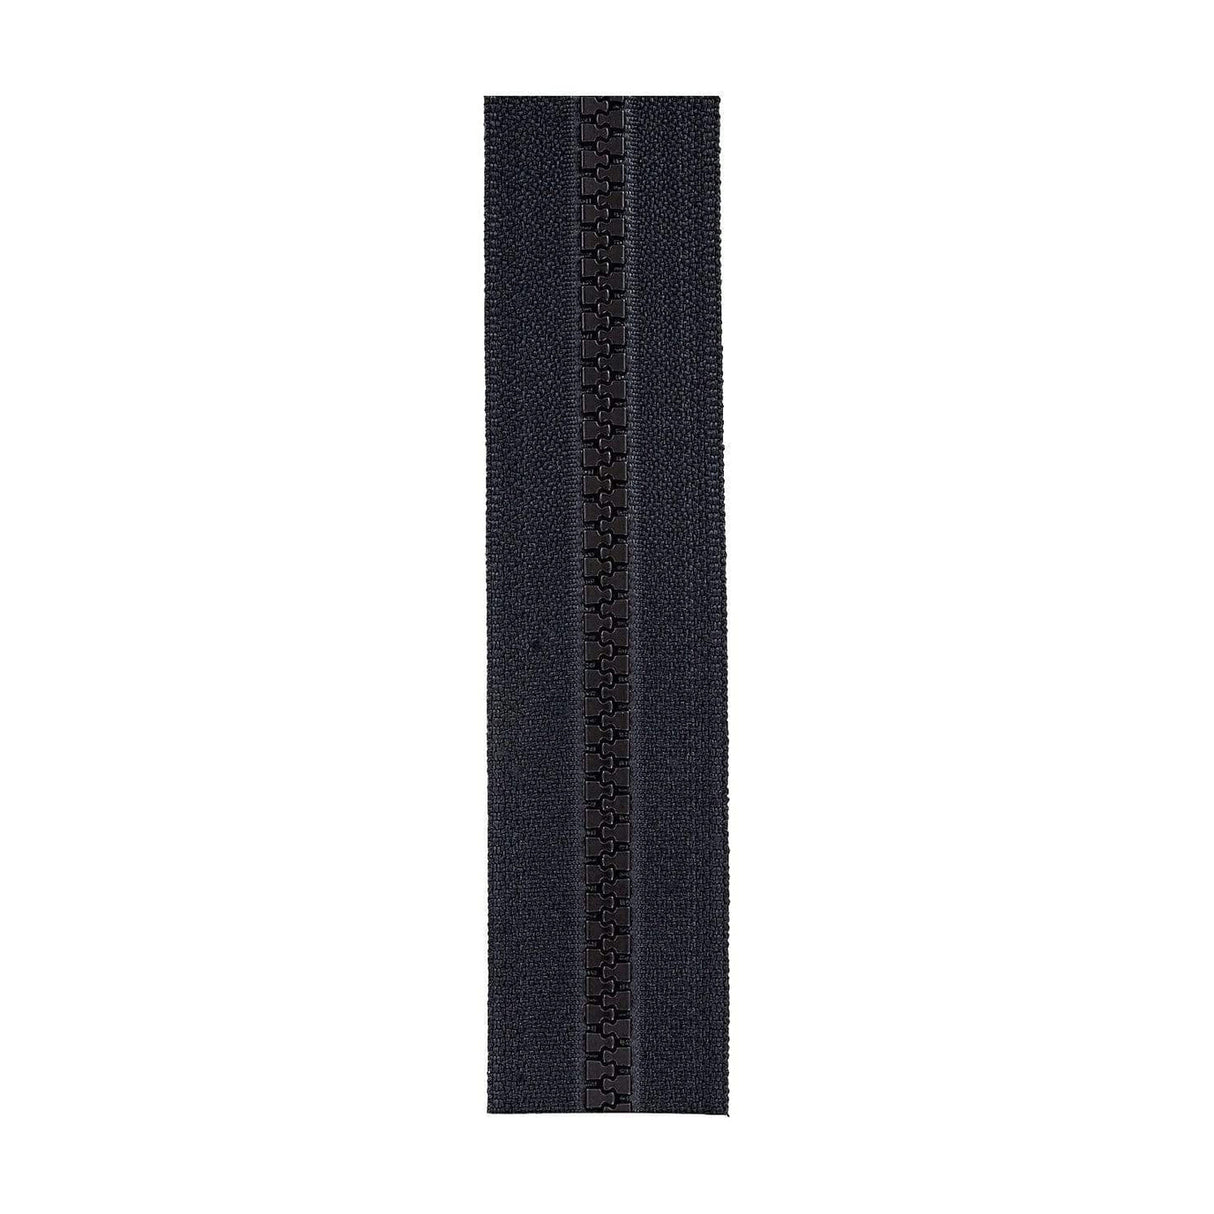 Zipper Repair - Black Plastic